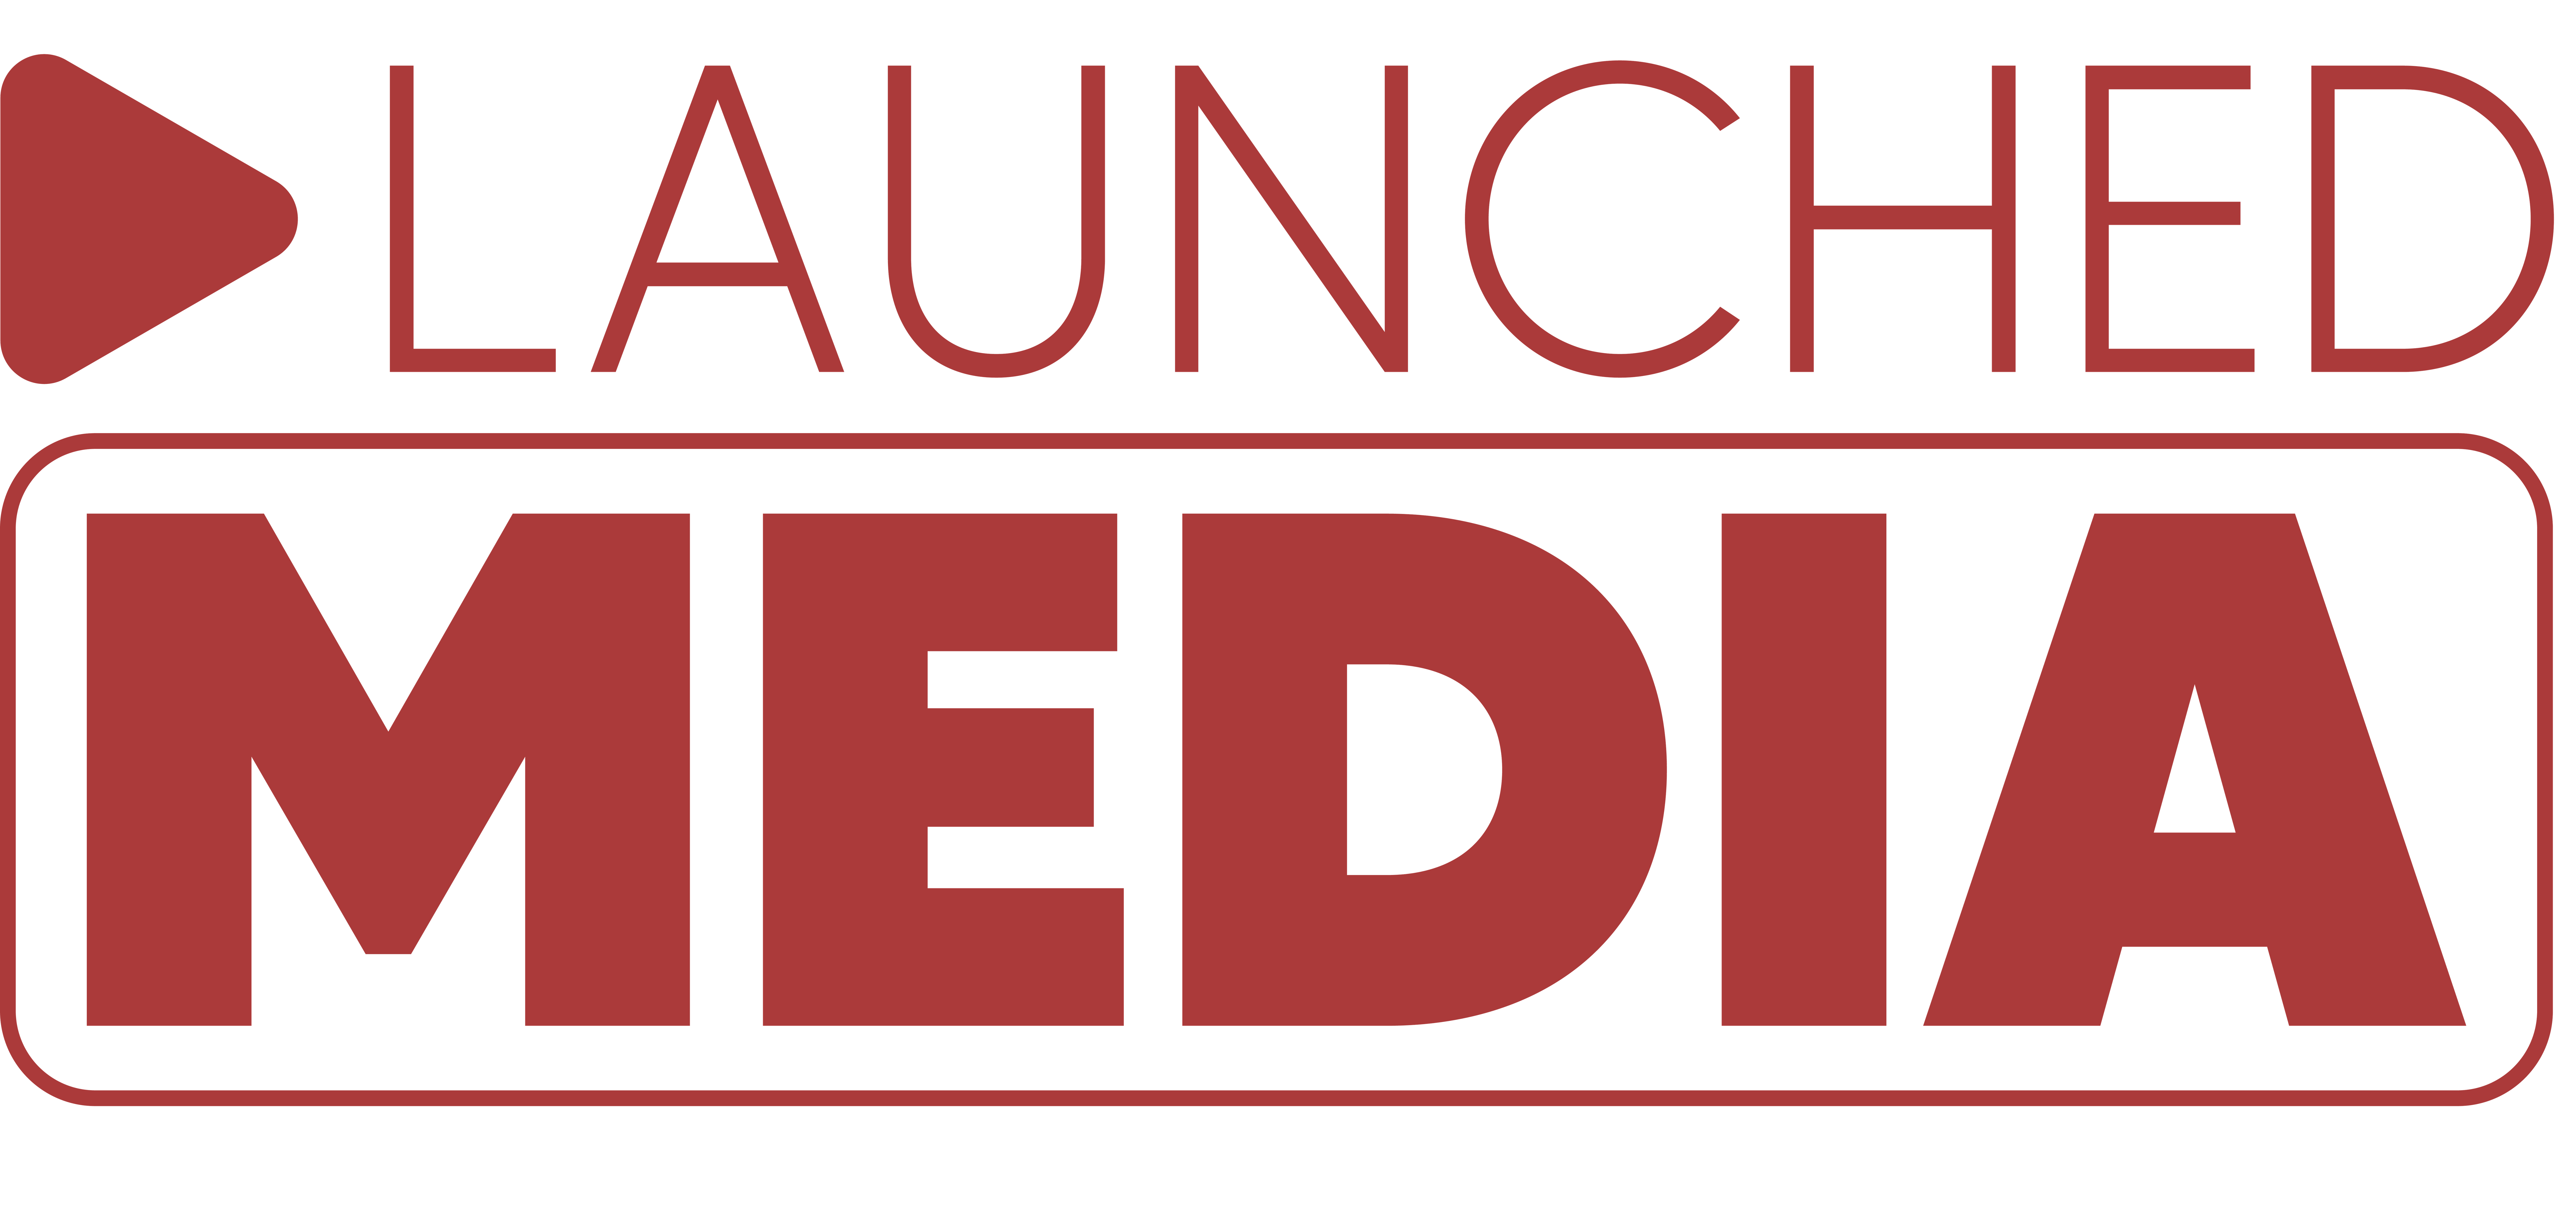 LaunchedMedia